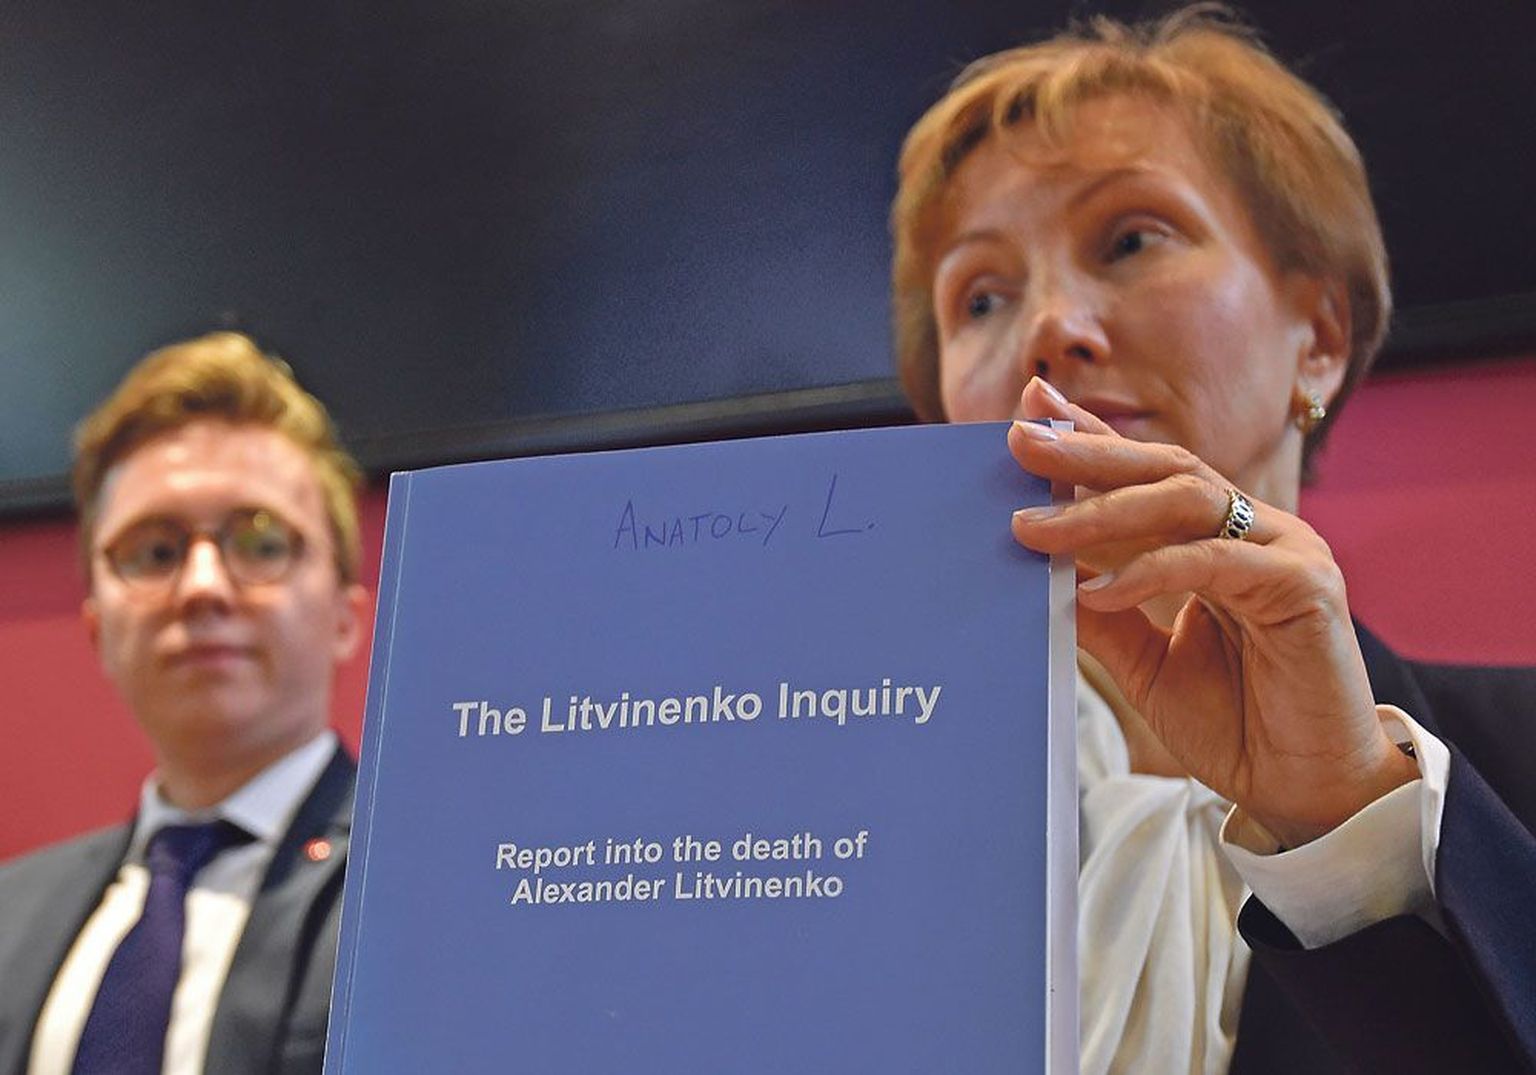 Инициатором расследования убийства Александра Литвиненко была его вдова Марина Литвиненко (на фото). 18 января 2016 года судья Высокого суда в отставке сэр Роберт Оуэн огласил свои выводы по итогам публичного расследования гибели Литвиненко.